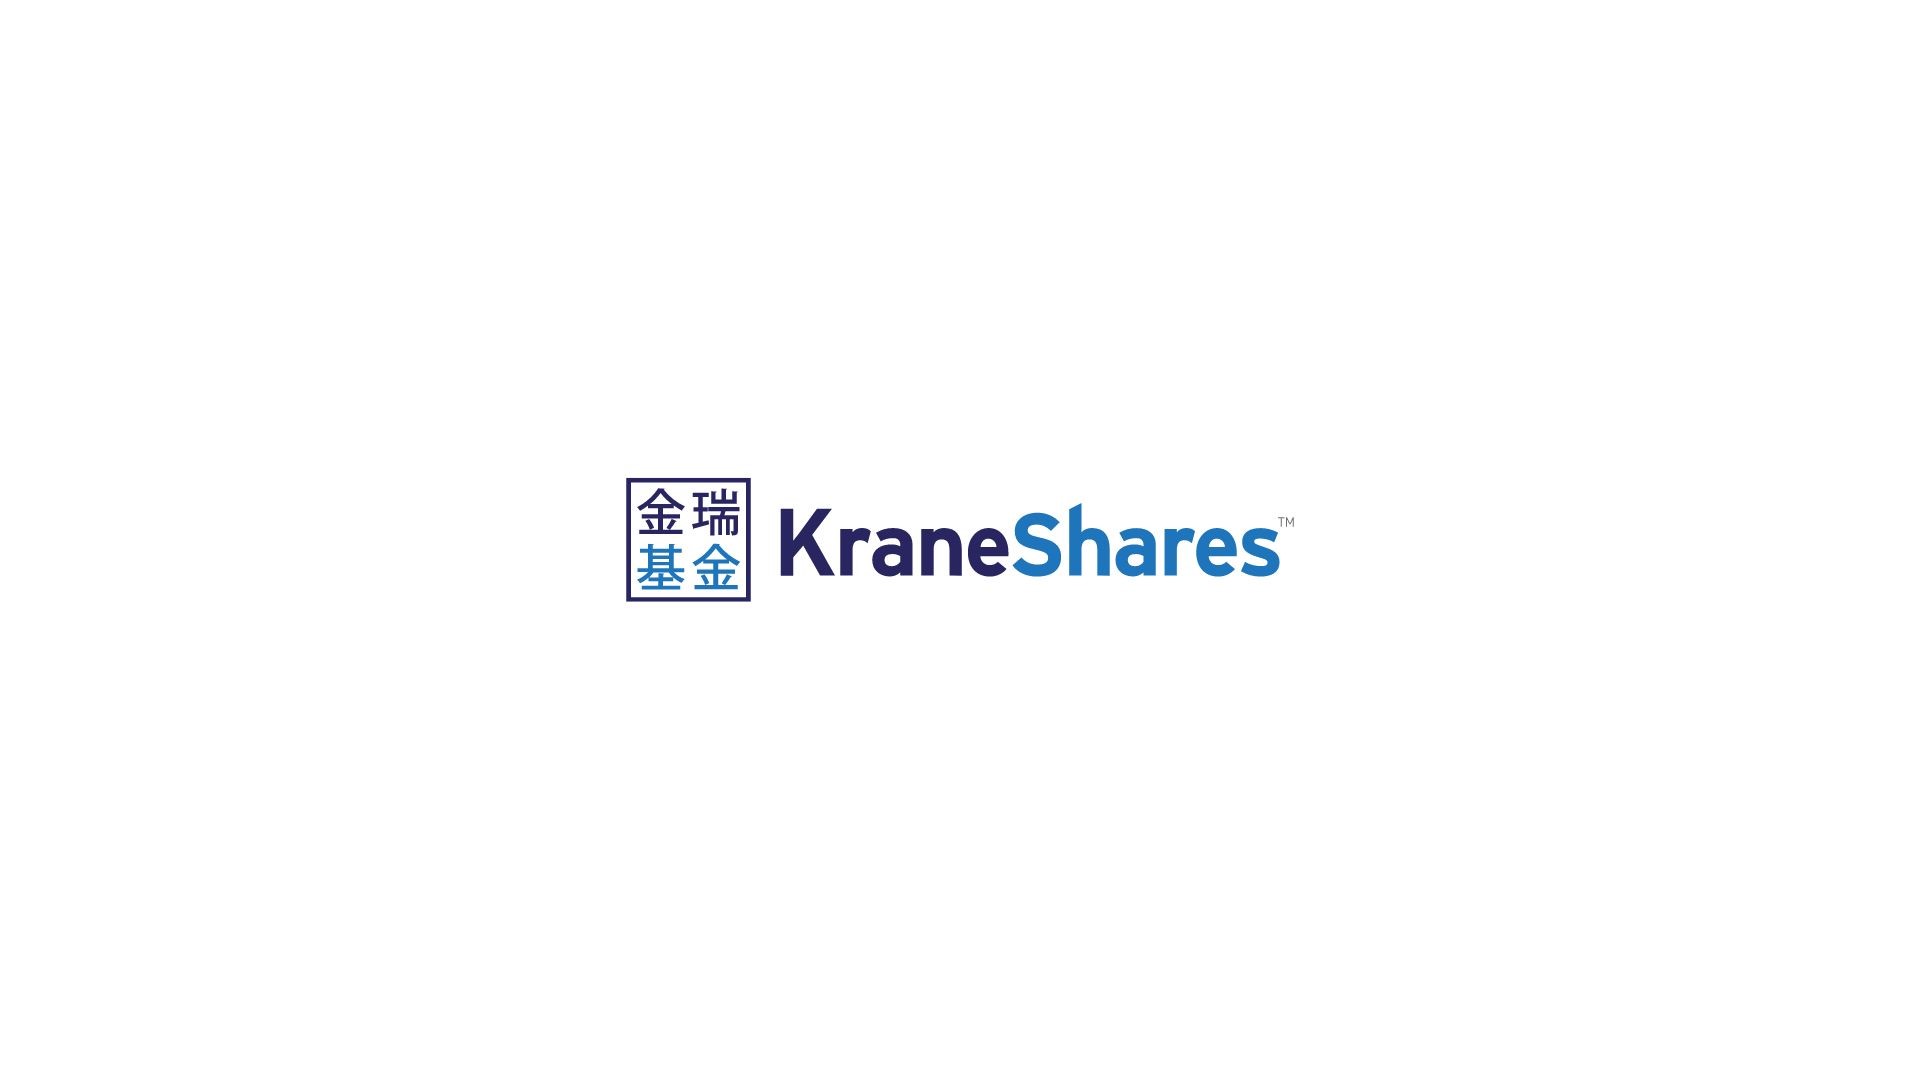 Sedan i tisdags har de första sex börshandlade fonderna emitterade av KraneShares kunnat handlas på Xetra och via handelsplatsen Börse Frankfurt. ETFerna ger enkel tillgång till den kinesiska aktiemarknaden med fokus på enskilda branscher, teman och portföljer diversifierade över olika sektorer.